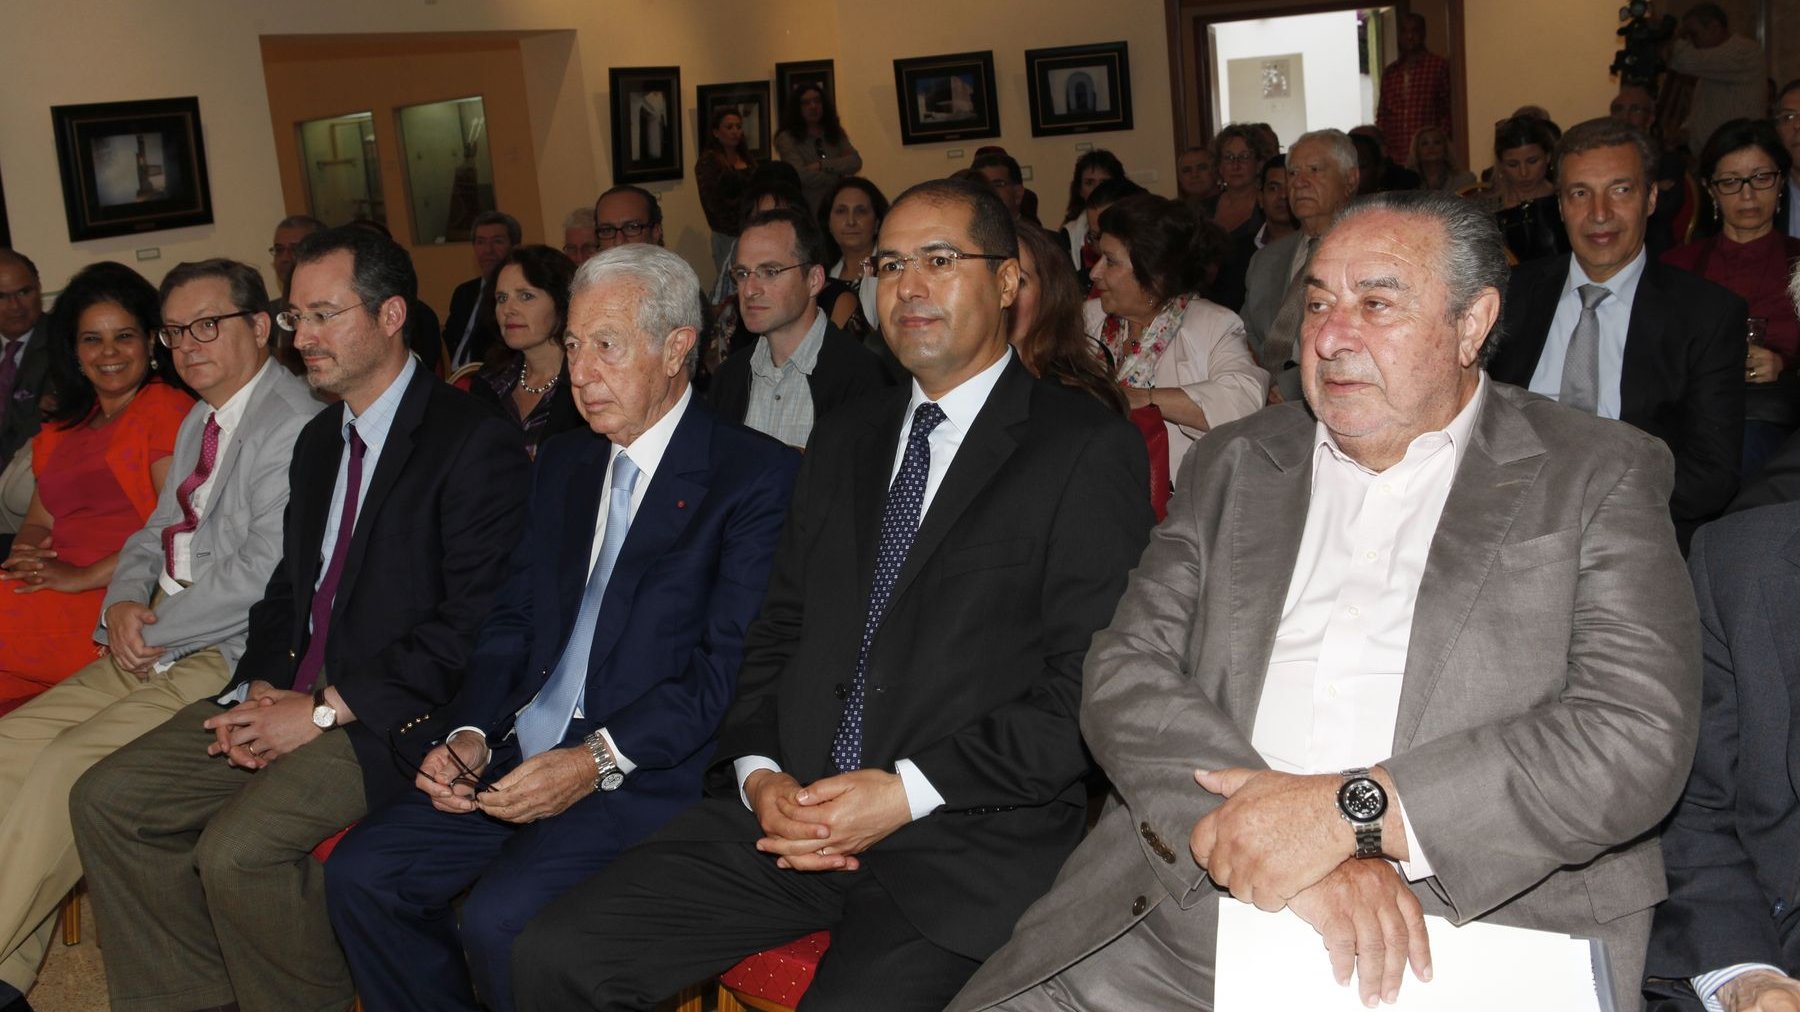 Brian Shukan, Consul général des Etats-Unis, Jacques Toledano, Président du Musée du Judaïsme de Casablanca, Khalid Safir, Wali du Grand Casablanca et Serge Berdugo étaient présents, mercredi, à la Fondation culturelle du patrimoine judéo-marocain. 
